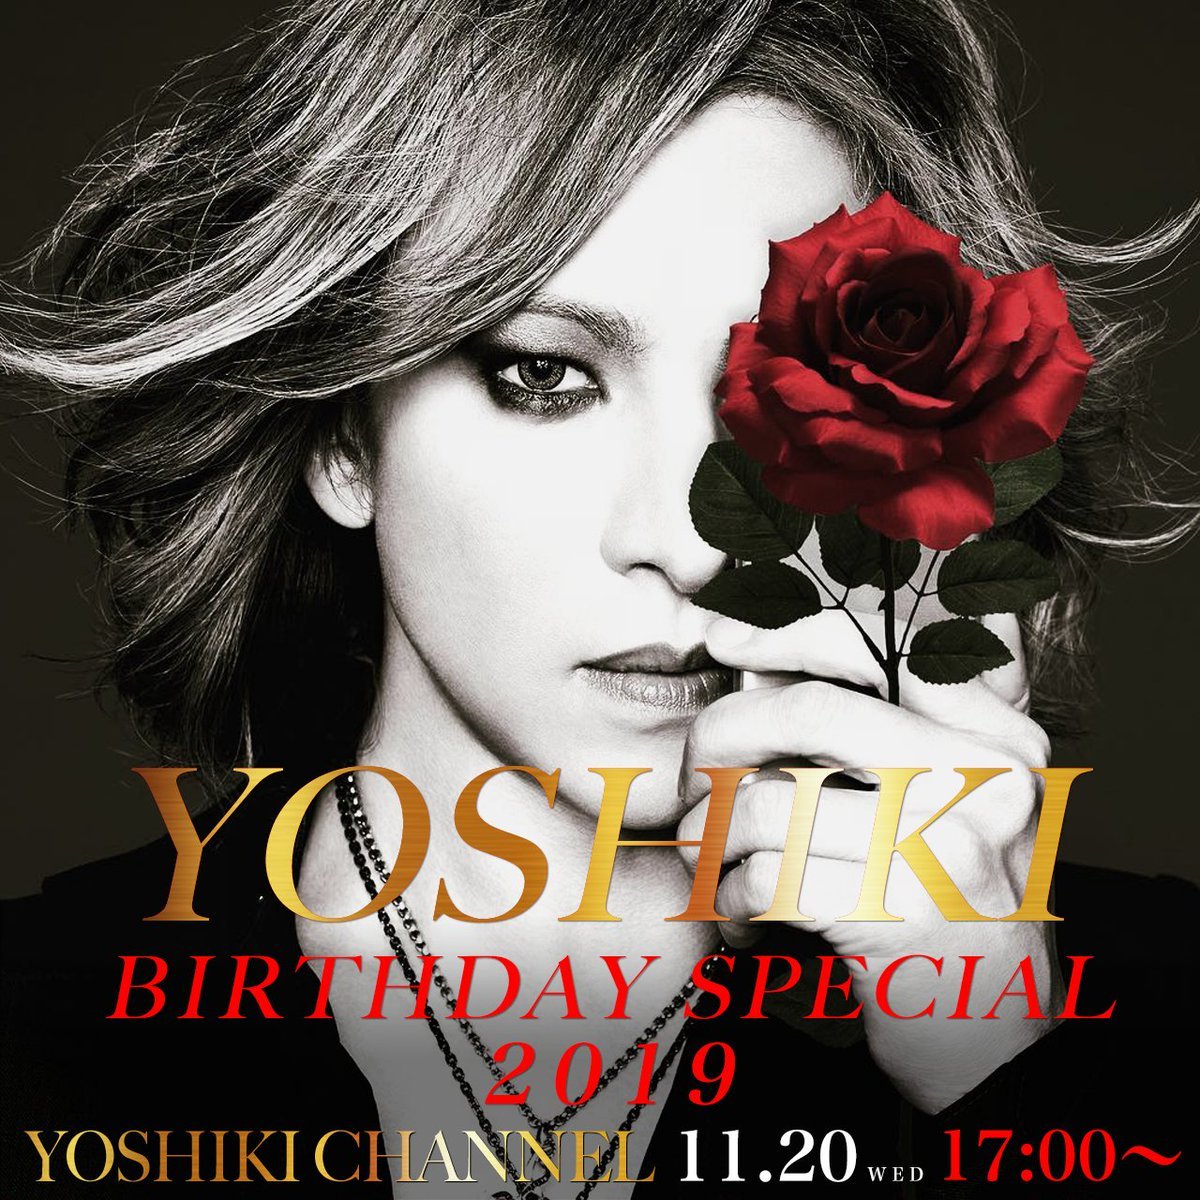 まもなく出演します。 I'm on my way!

RT@YoshikiChannel【生放送開始】
#BIRTHDAY SPECIAL 2019
ch.nicovideo.jp/yoshikiofficia…

'#YOSHIKI Birthday Special- LIVE on #YoshikiChannelInternational
Watch 11/20 midnight PST
Japan→ch.nicovideo.jp/yoshikiofficial
International→yoshiki.net/YCI.html